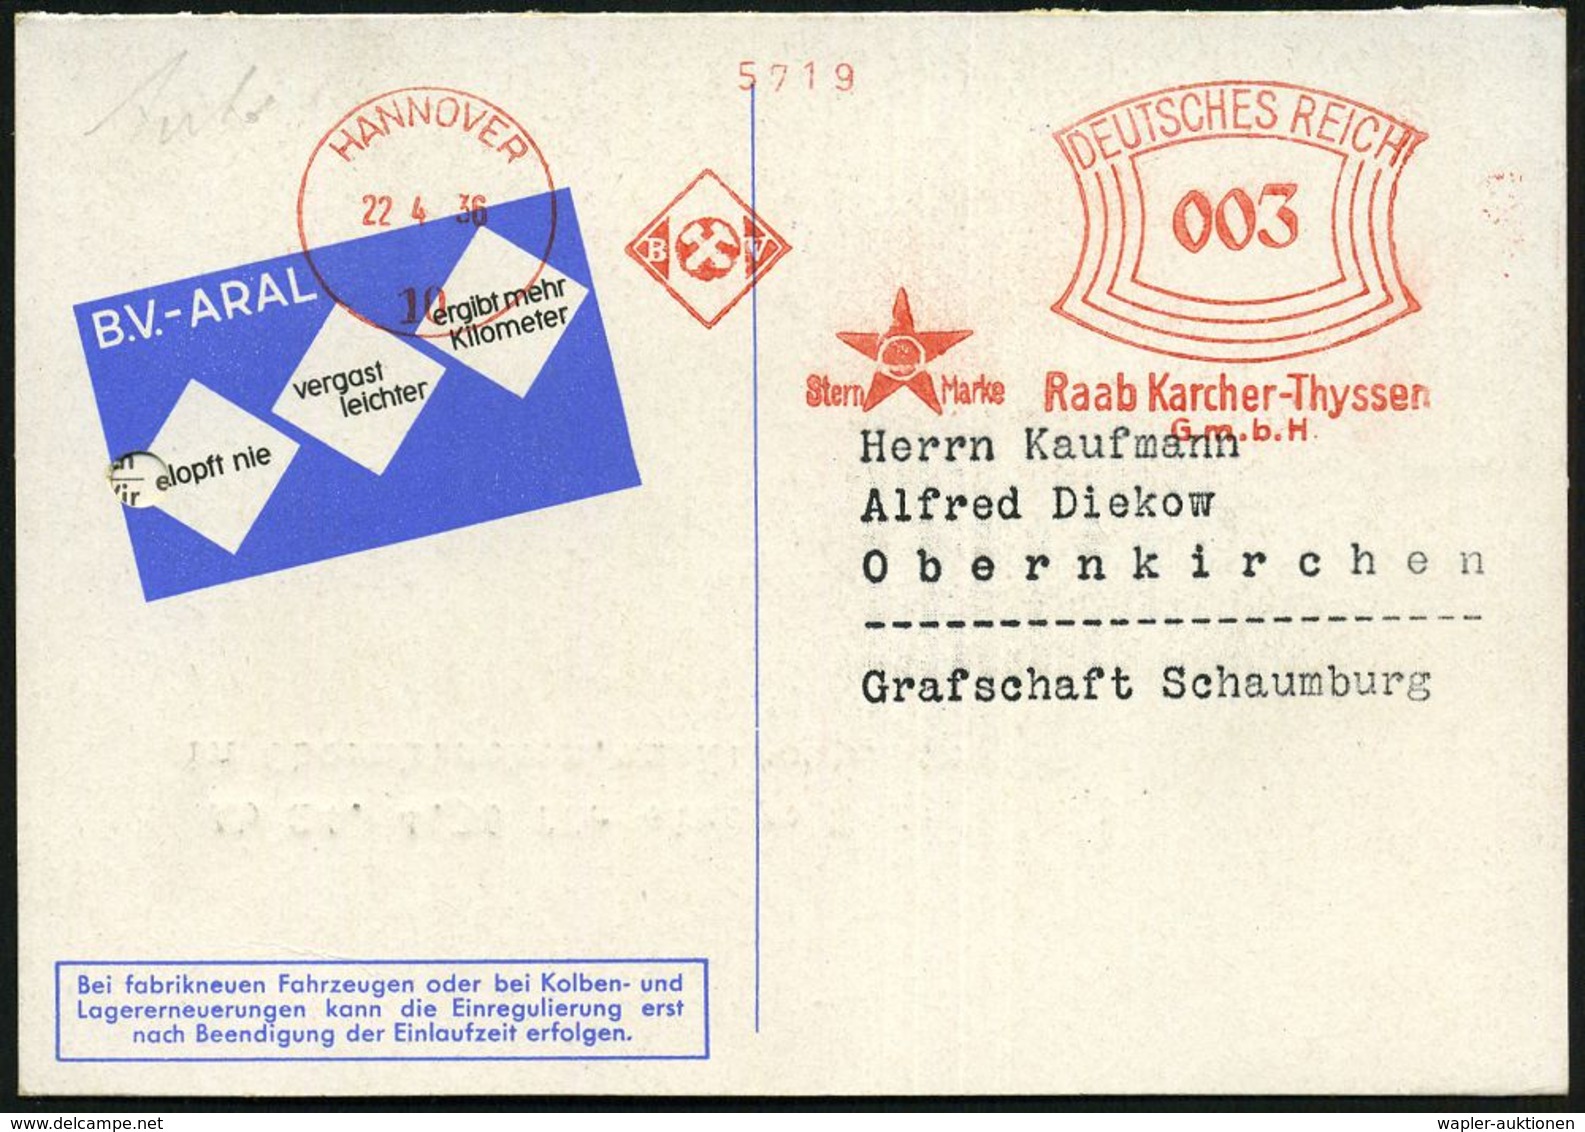 WERKSTATT / GARAGE / TANKSTELLE : HANNOVER/ 10/ BV/ ..Raab Karcher-Thyssen/ GmbH 1936 (22.4.) AFS (Aral-Stern-Logo) Klap - Cars